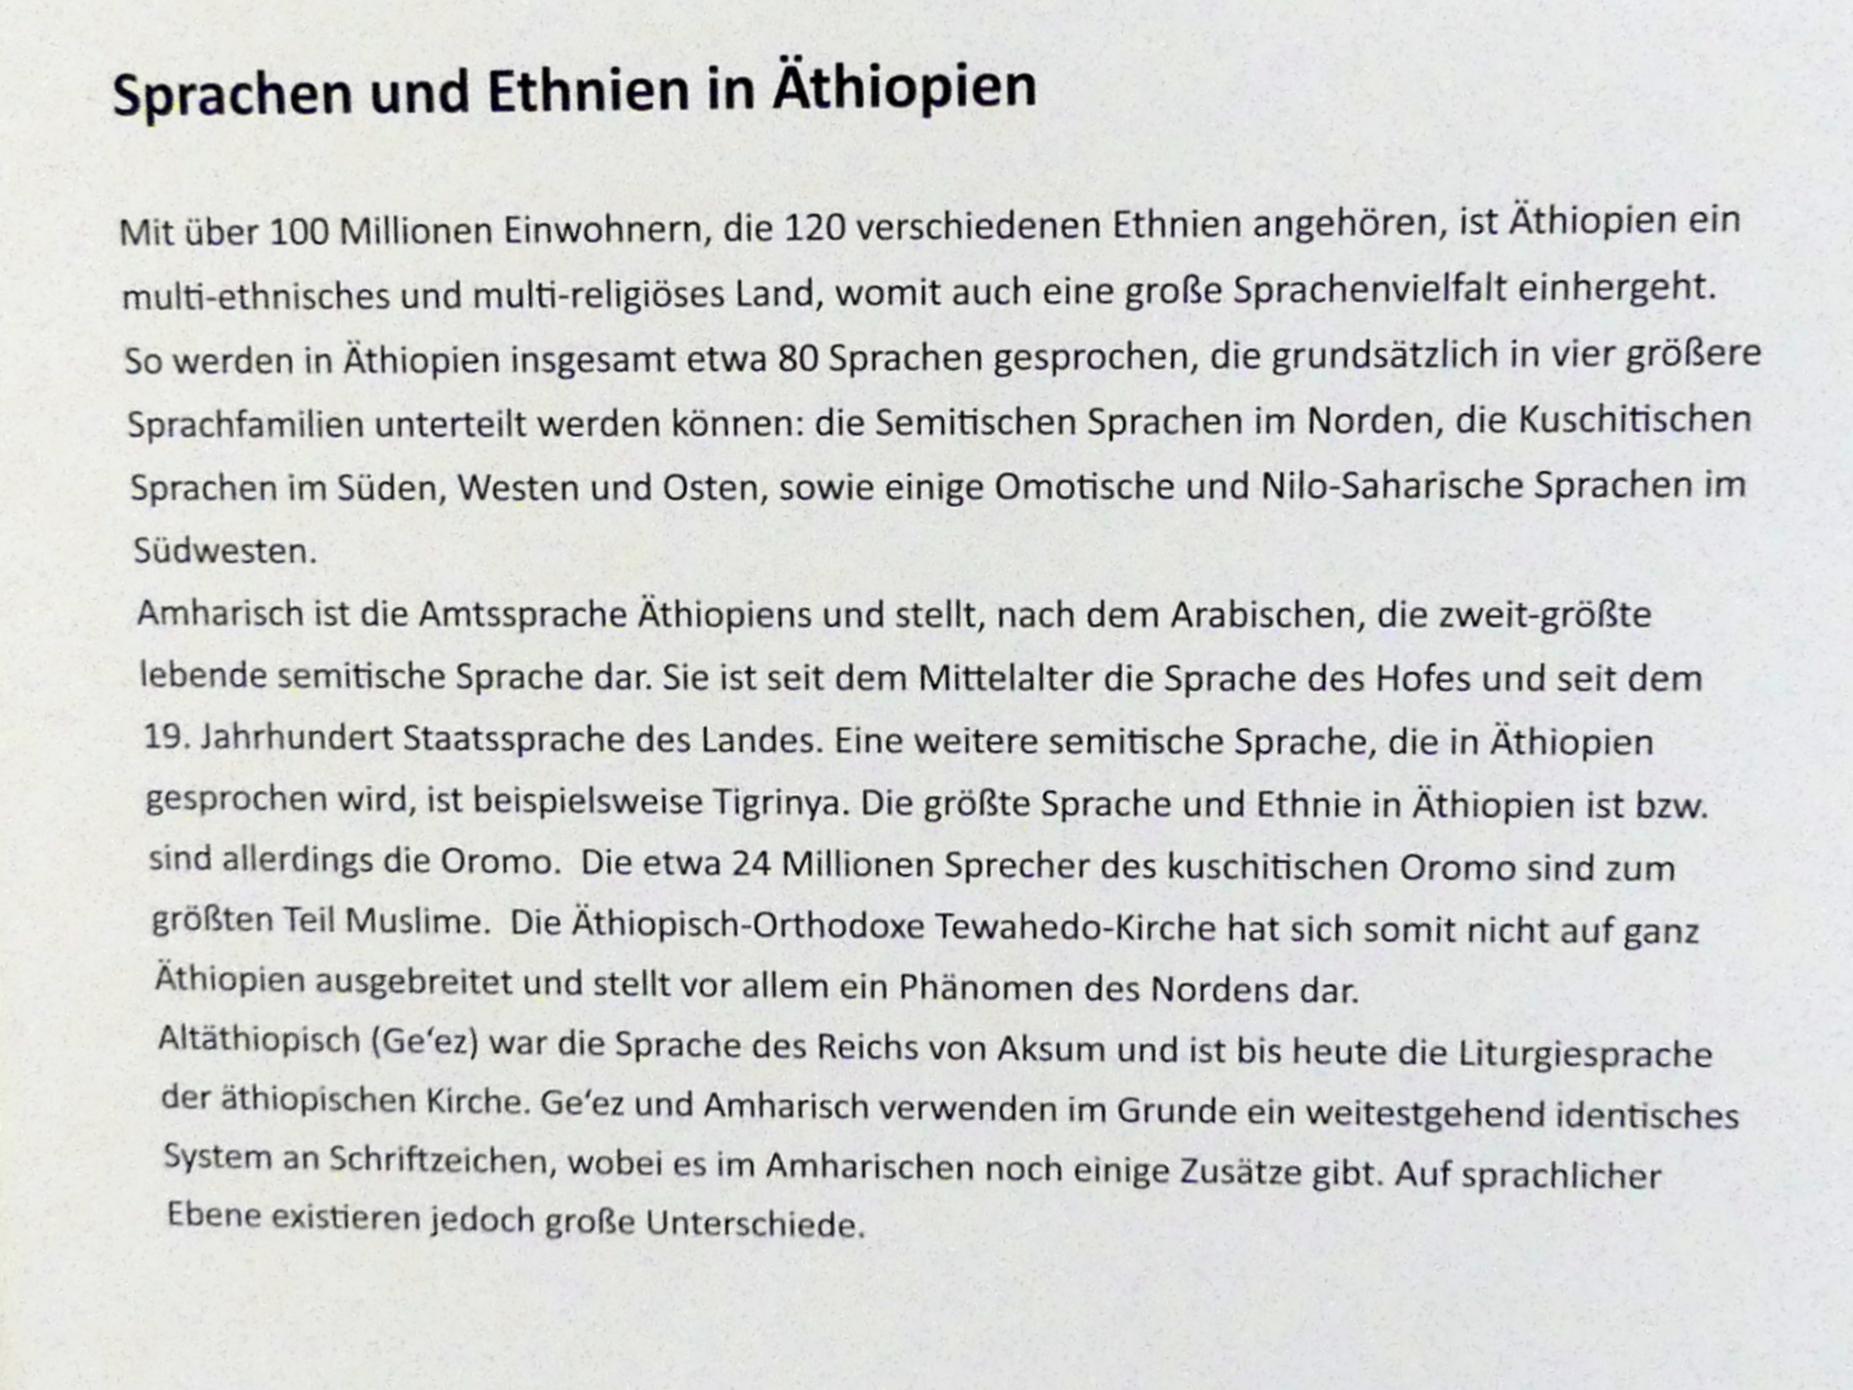 Frankfurt am Main, Ikonen-Museum, Das äthiopisch-orthodoxe Christentum, Bild 4/4